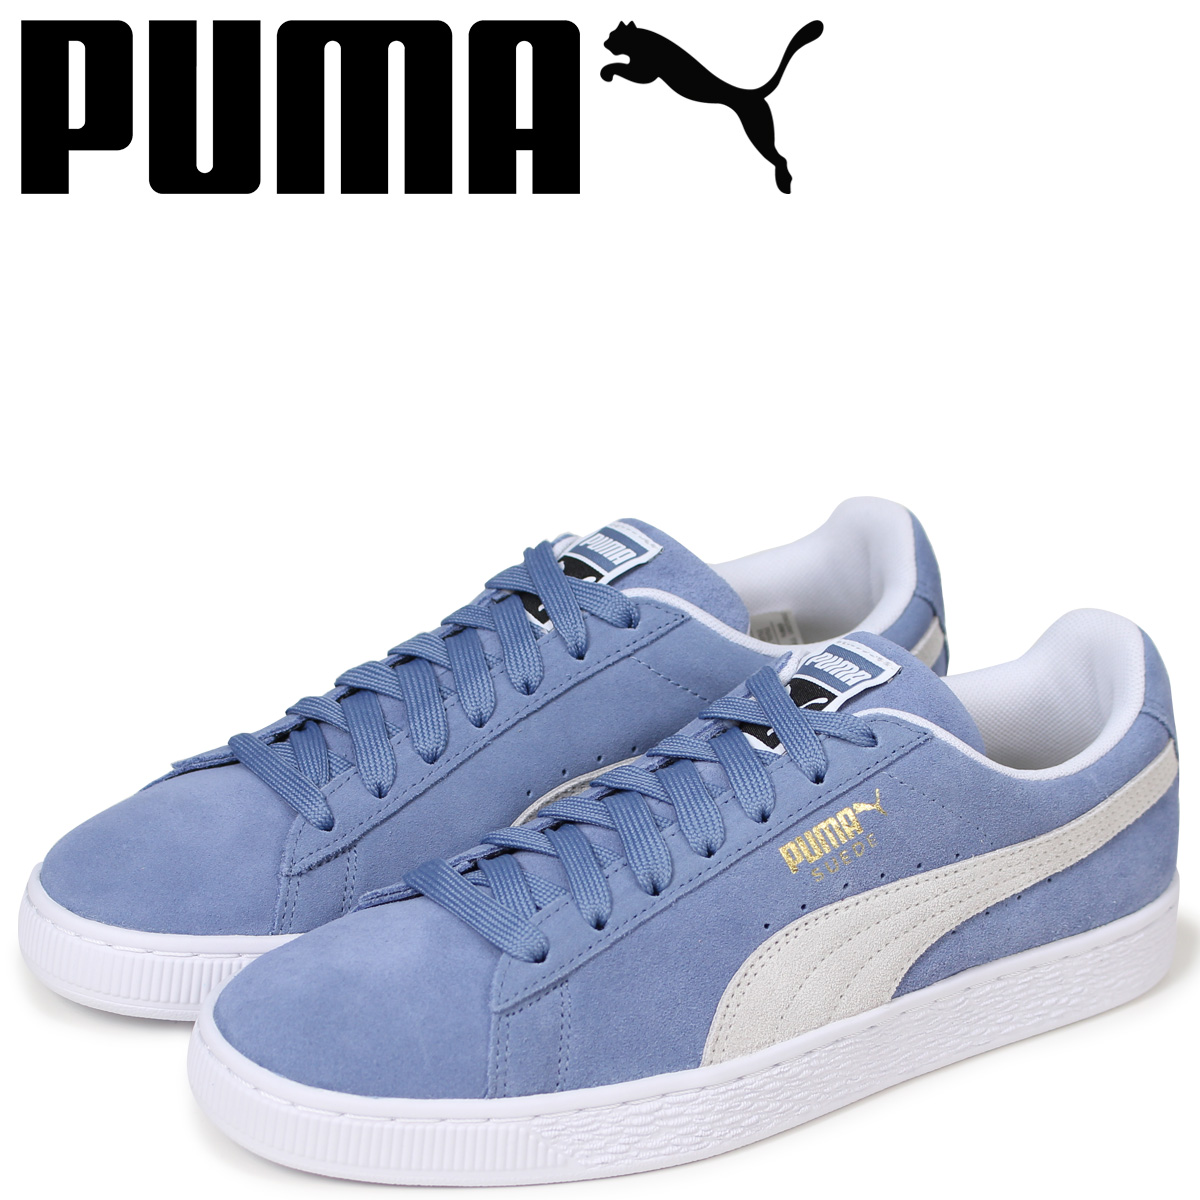 puma shoes suede blue